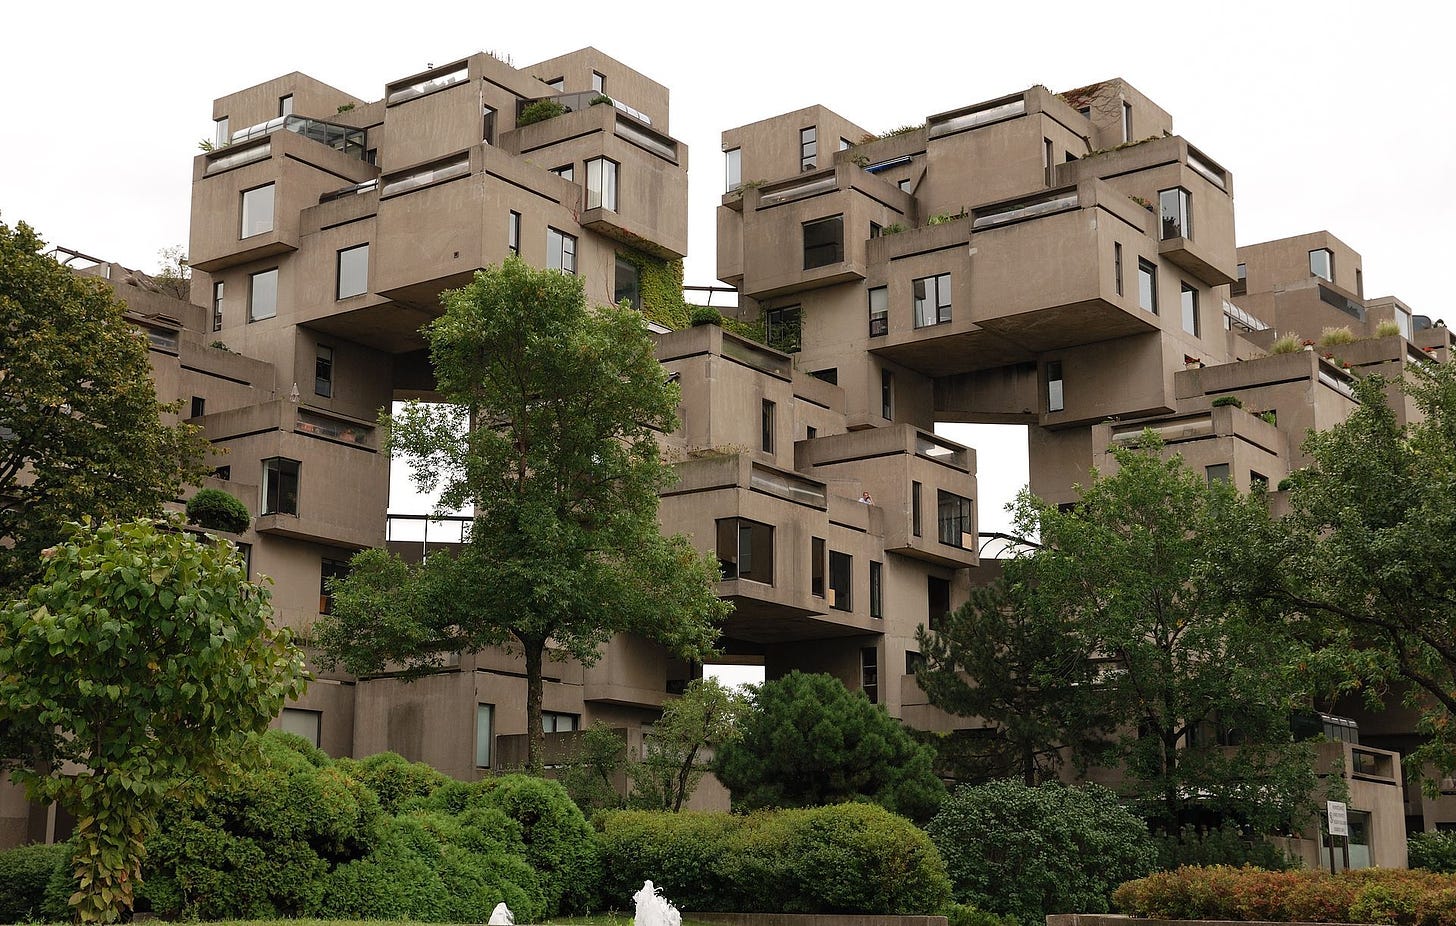 Montreal - QC - Habitat67 - Brutalist architecture ...